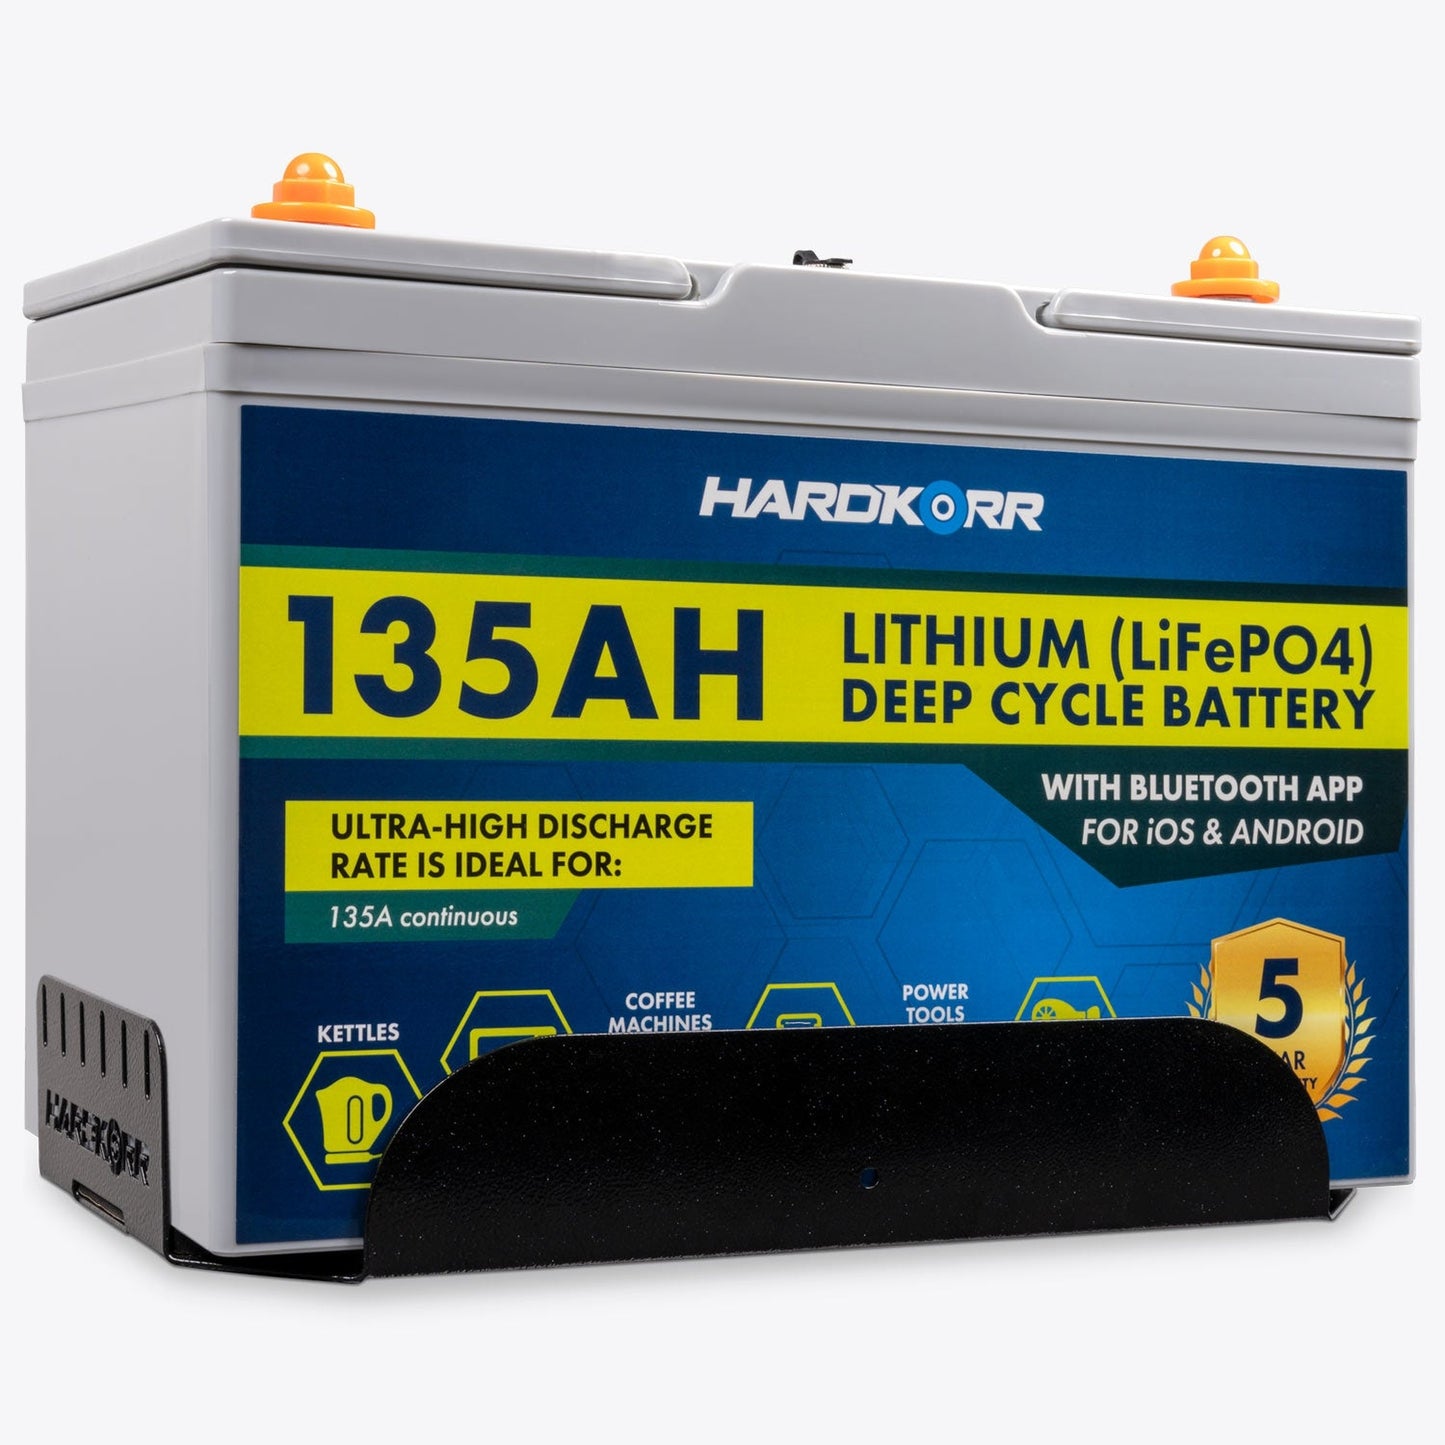 Hard Korr Battery Mounting Tray for Hardkorr Batteries